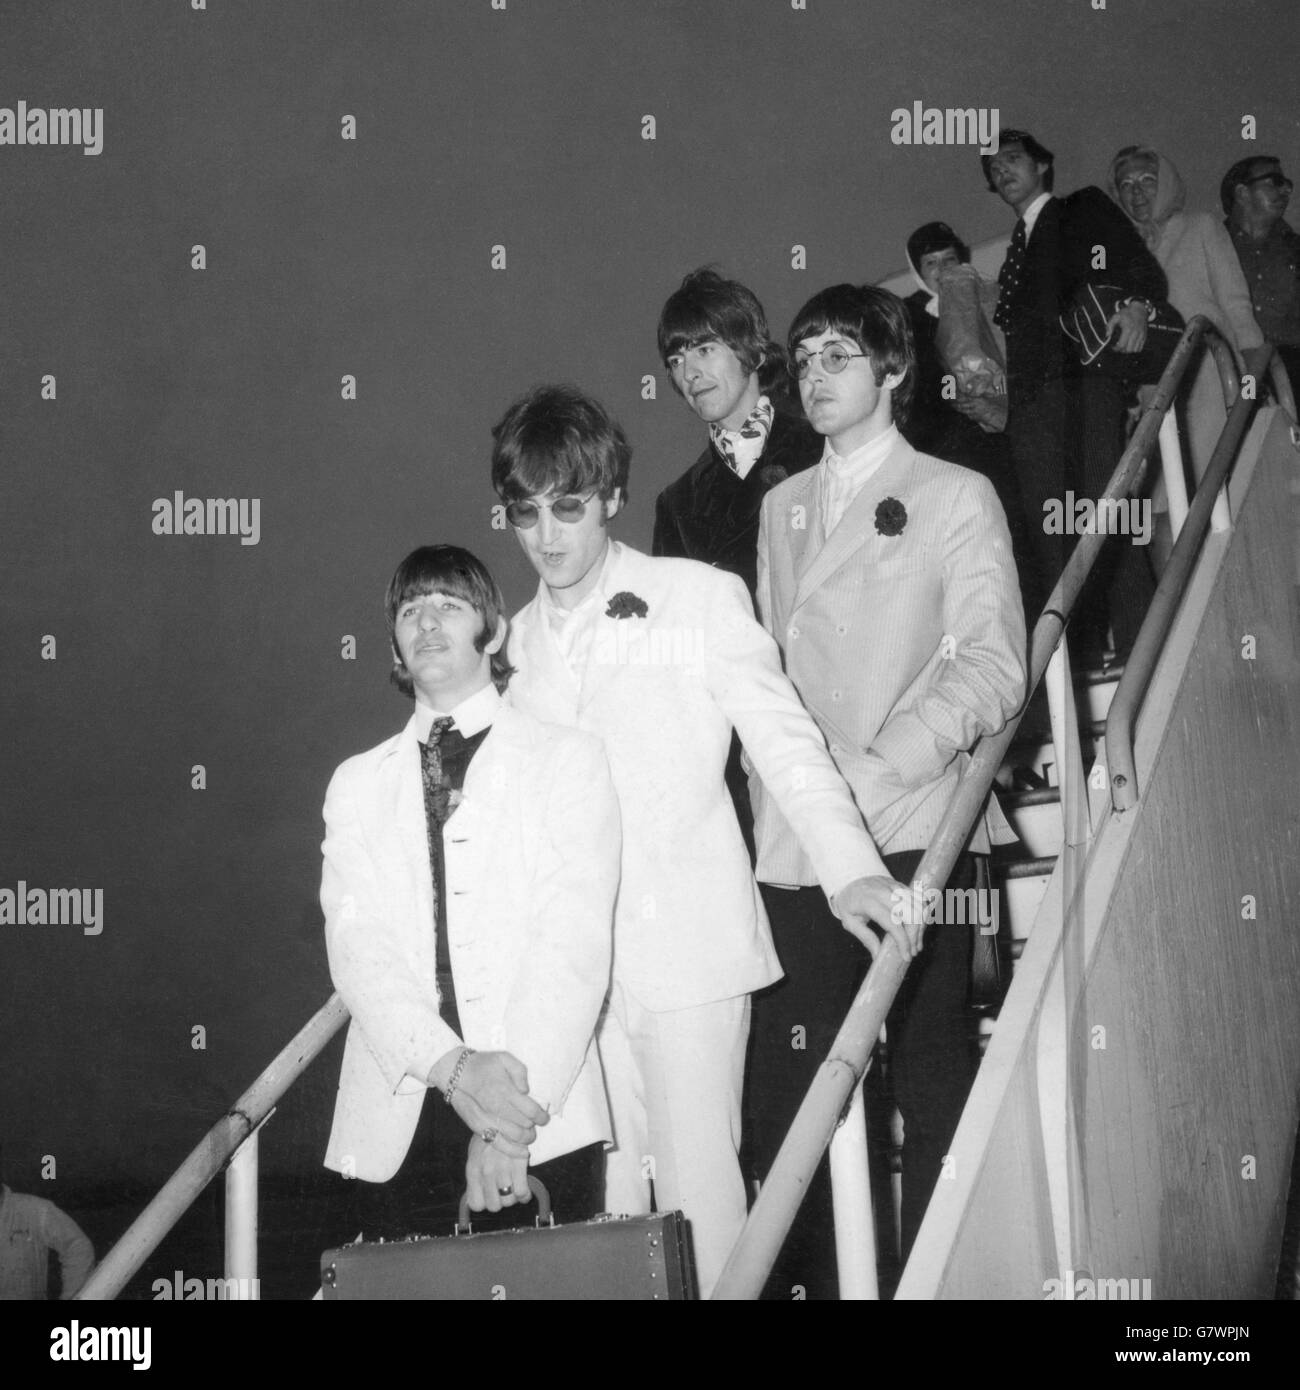 Los Beatles se imaginaron cuando llegaron de su avión a la llegada al aeropuerto de Londres desde su tour americano a principios de hoy (miércoles). (De izquierda a derecha) Ringo Starr en chaqueta blanca y pantalón negro, JOHN LENNON en traje blanco y gafas de sol, GEORGE HARRISON en un traje de terciopelo negro y PAUL McCartney, el único soltero de los Beatles que negó que se casara. A pesar de la hora temprana, alrededor de 250 fanáticos gritando estaban en el balcón del Queen's Building para dar a los Beatles una ruidosa bienvenida, desde su espectacular gira. Foto de stock